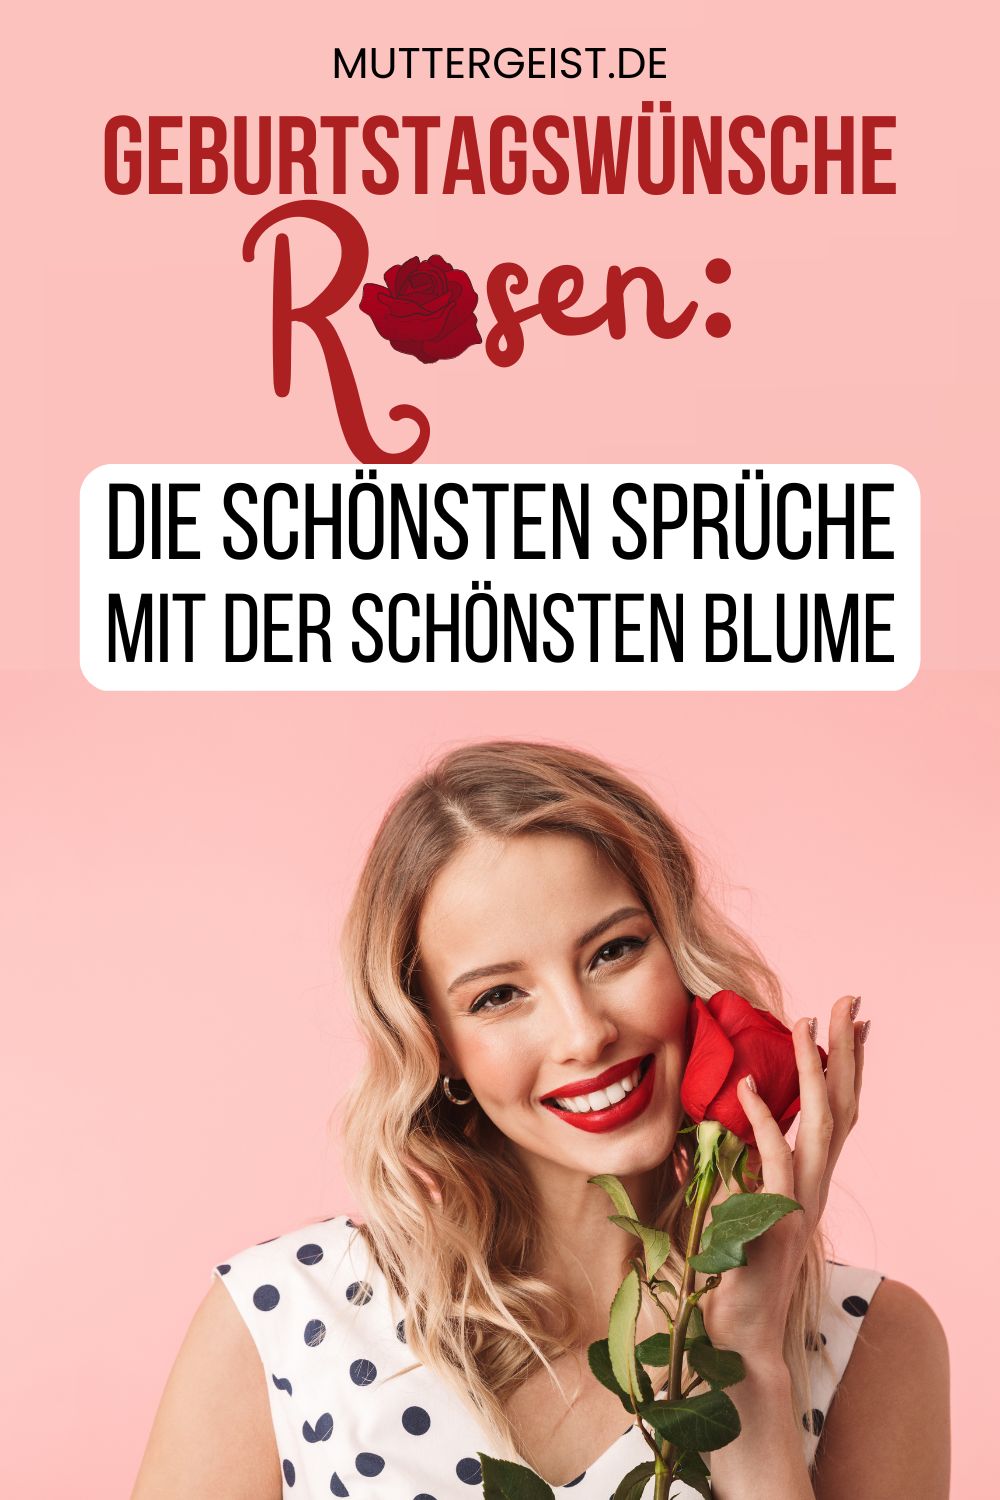 Geburtstagswünsche Rosen – Die schönsten Sprüche mit der schönsten Blume Pinterest